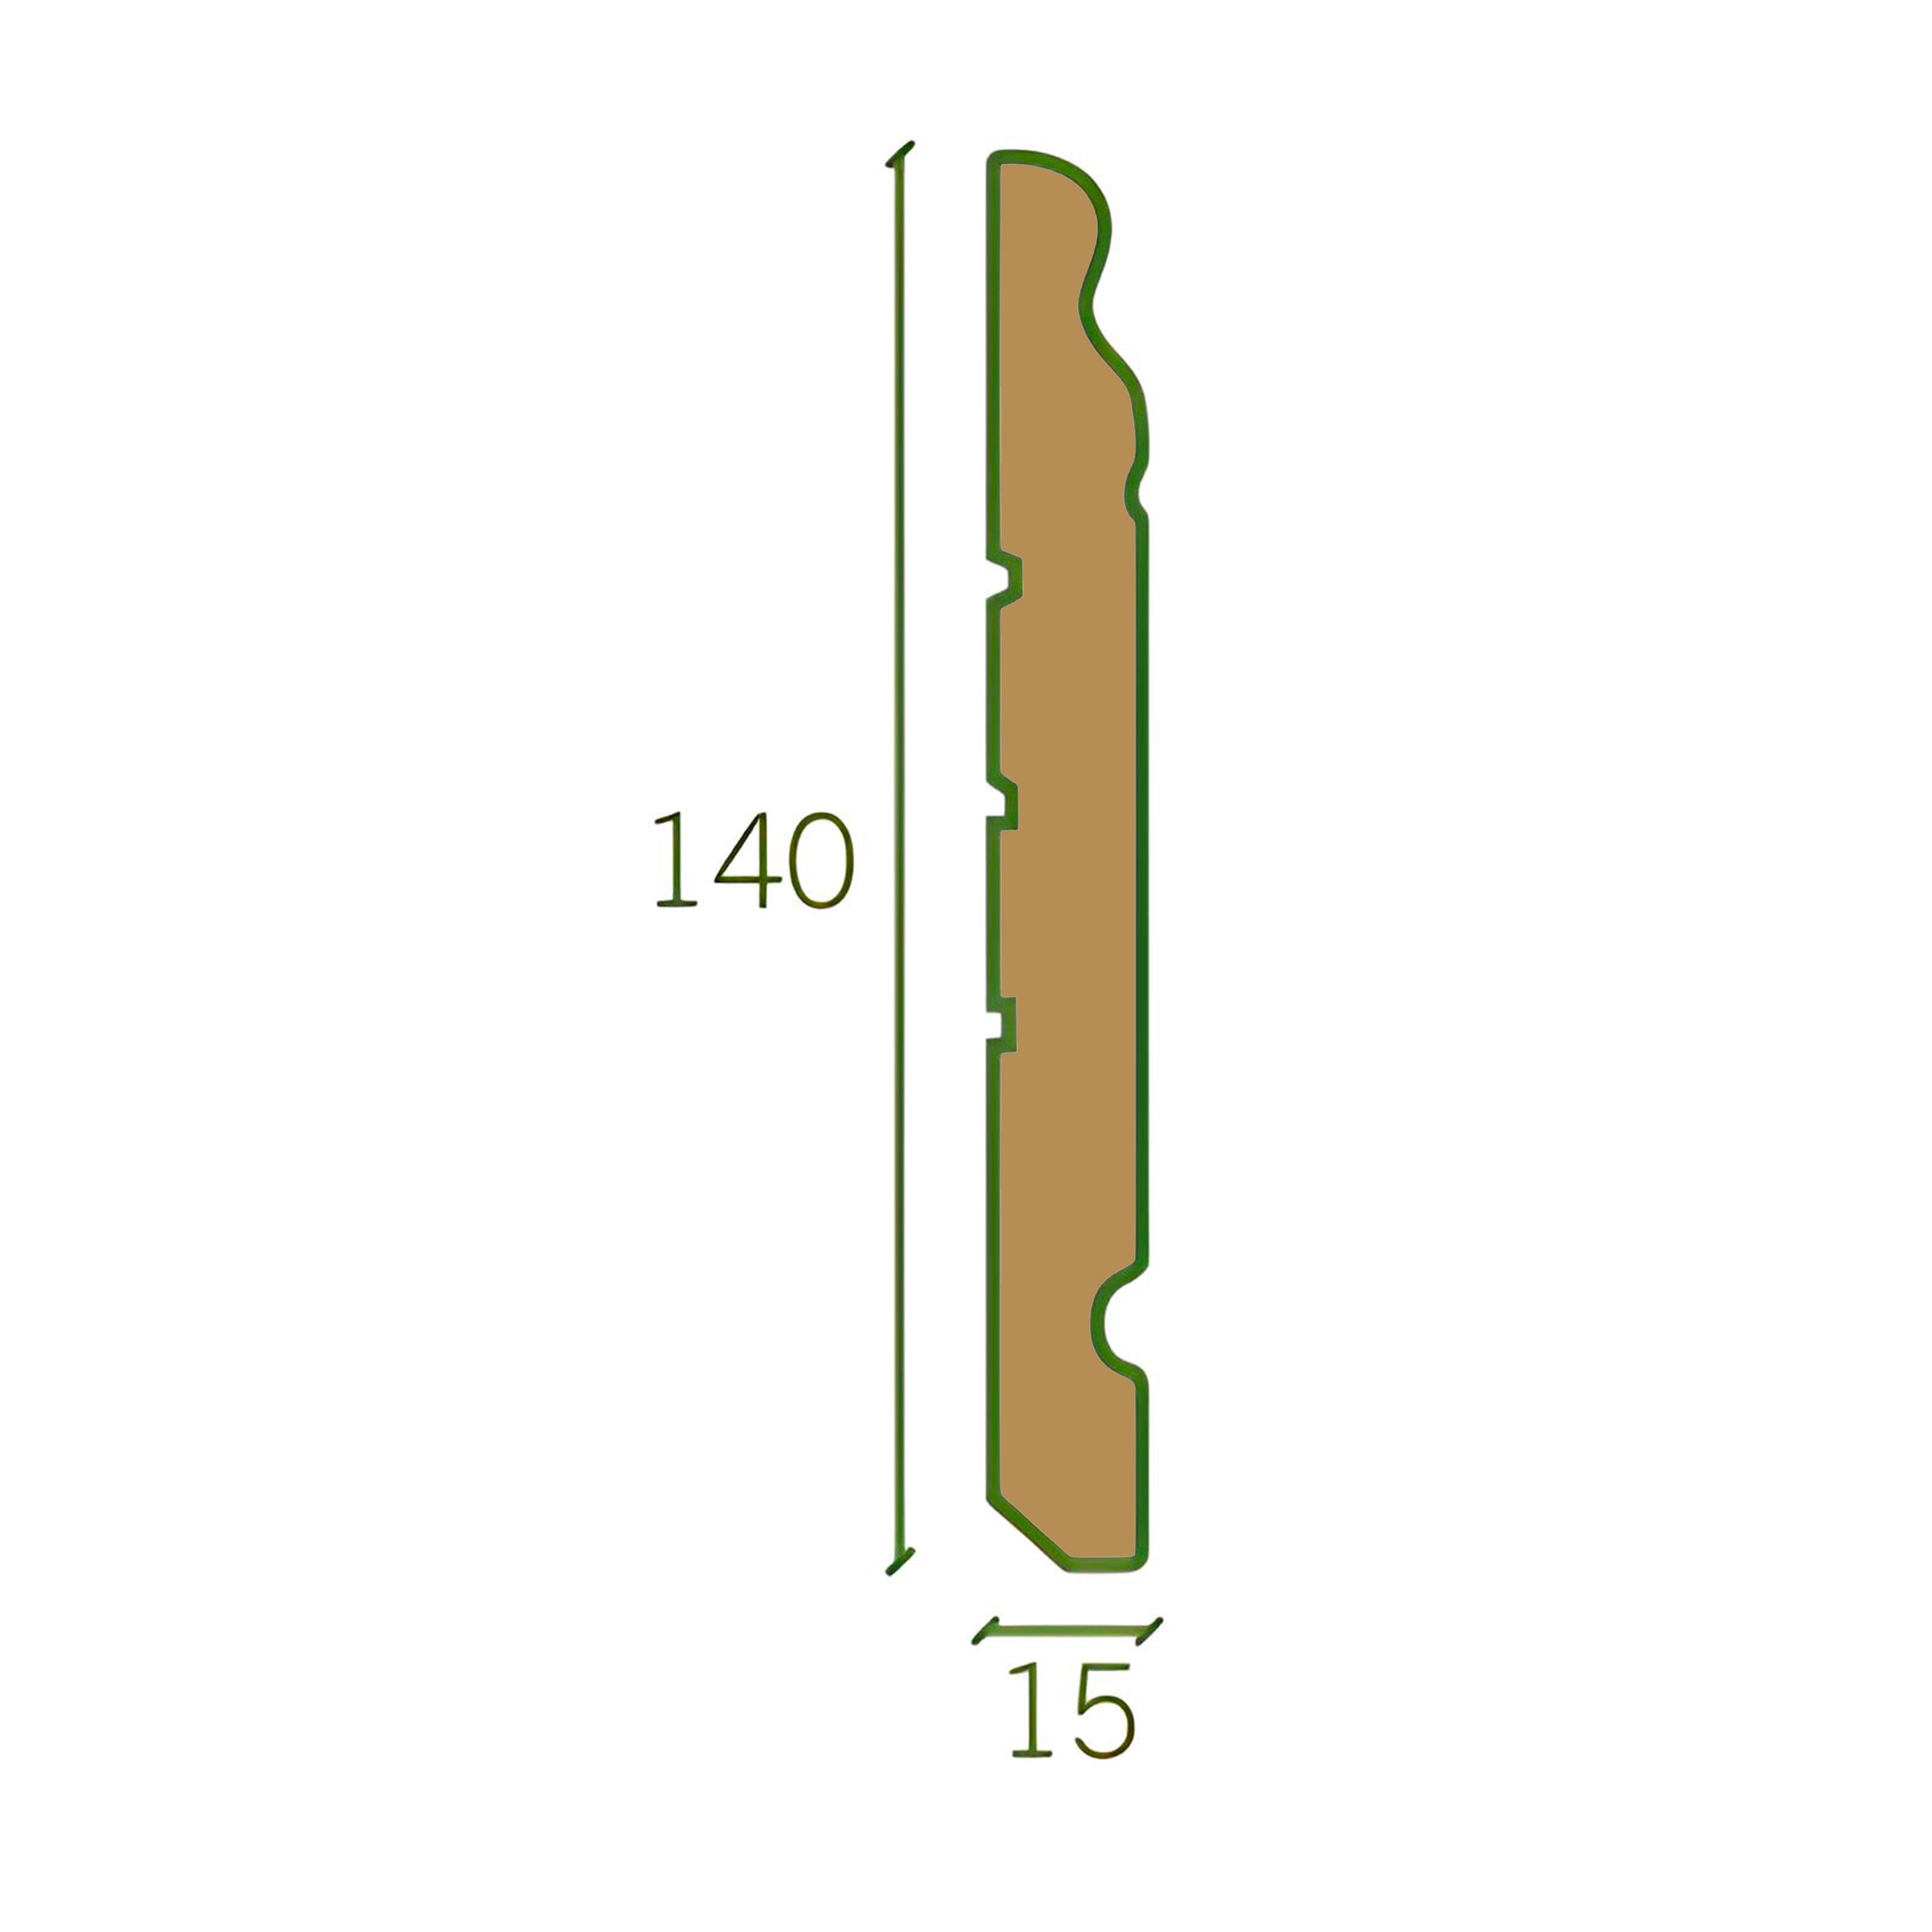 Battiscopa GRAN DUCALE ROMA LEGNO MASSELLO 140x15mm bianco, grezzo o ral 9010 - Eternal Parquet